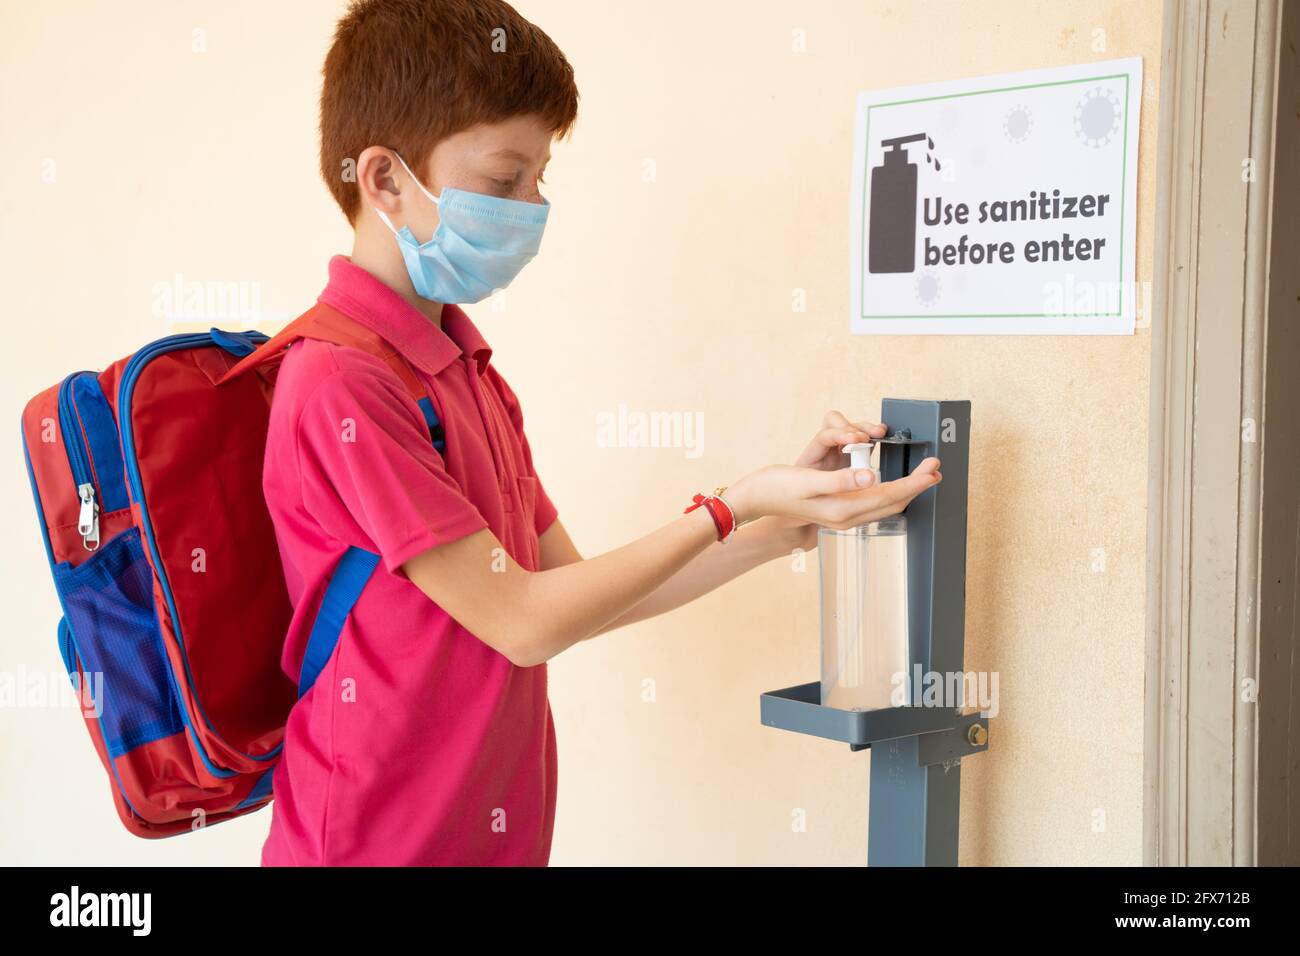 Concentrez-vous sur l'assainisseur, enfant avec un masque médical utilisant l'assainisseur pour les mains avant d'entrer dans la classe - concept de la rentrée ou de l'école rouvrir avec le coronavirus Banque D'Images